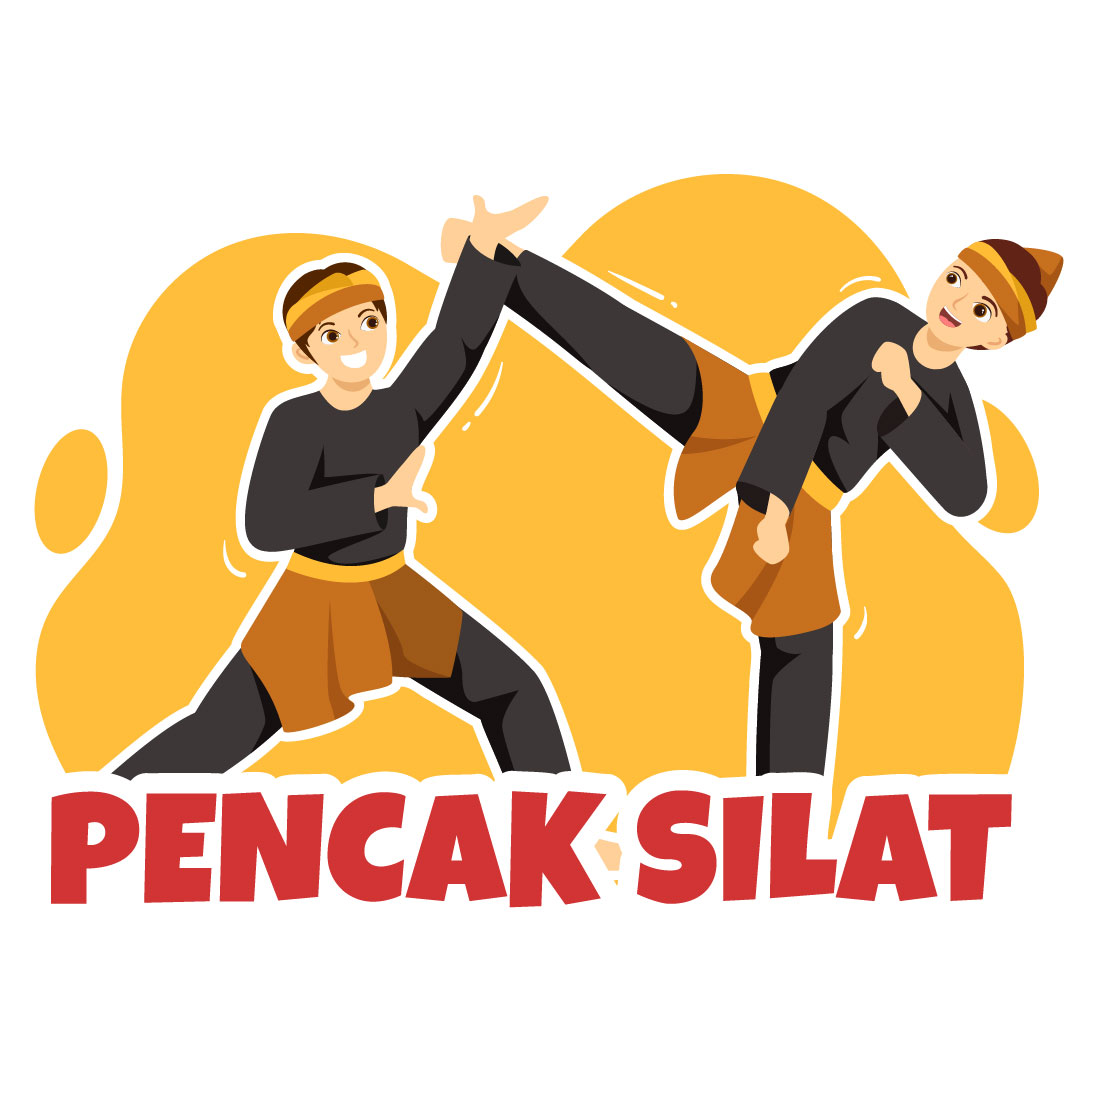 12 Pencak Silat Sport Illustration main cover